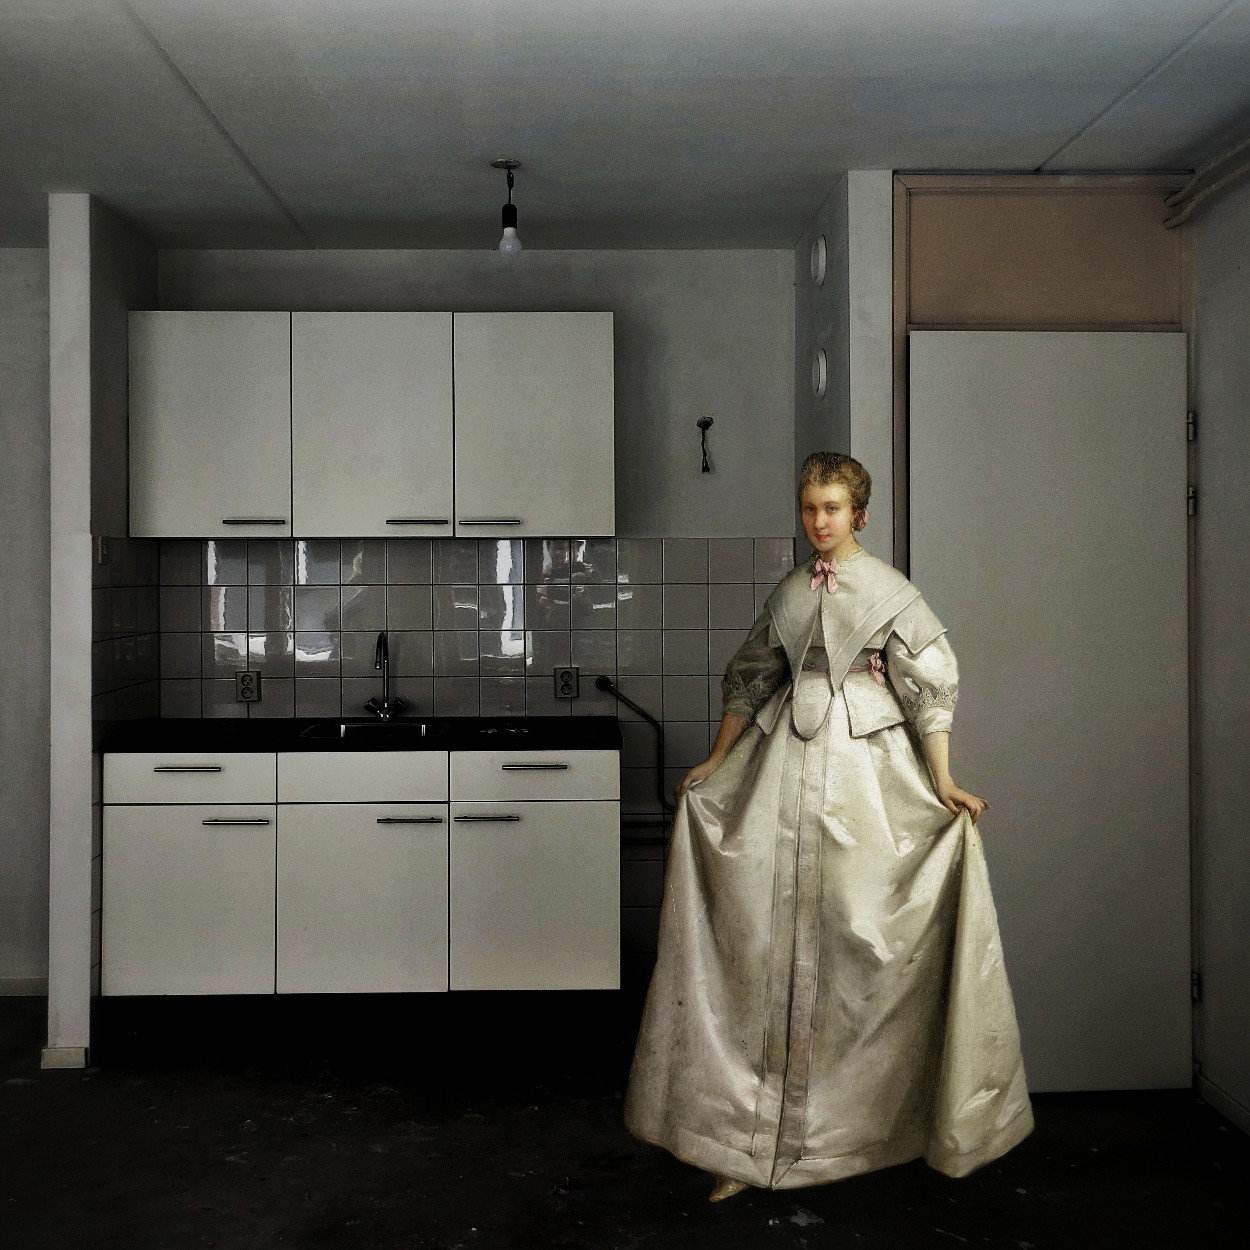 Een dame in barok-jurk maakt een reverence in een lege keuken, in dit surrealistische werk van Ruben van Gogh